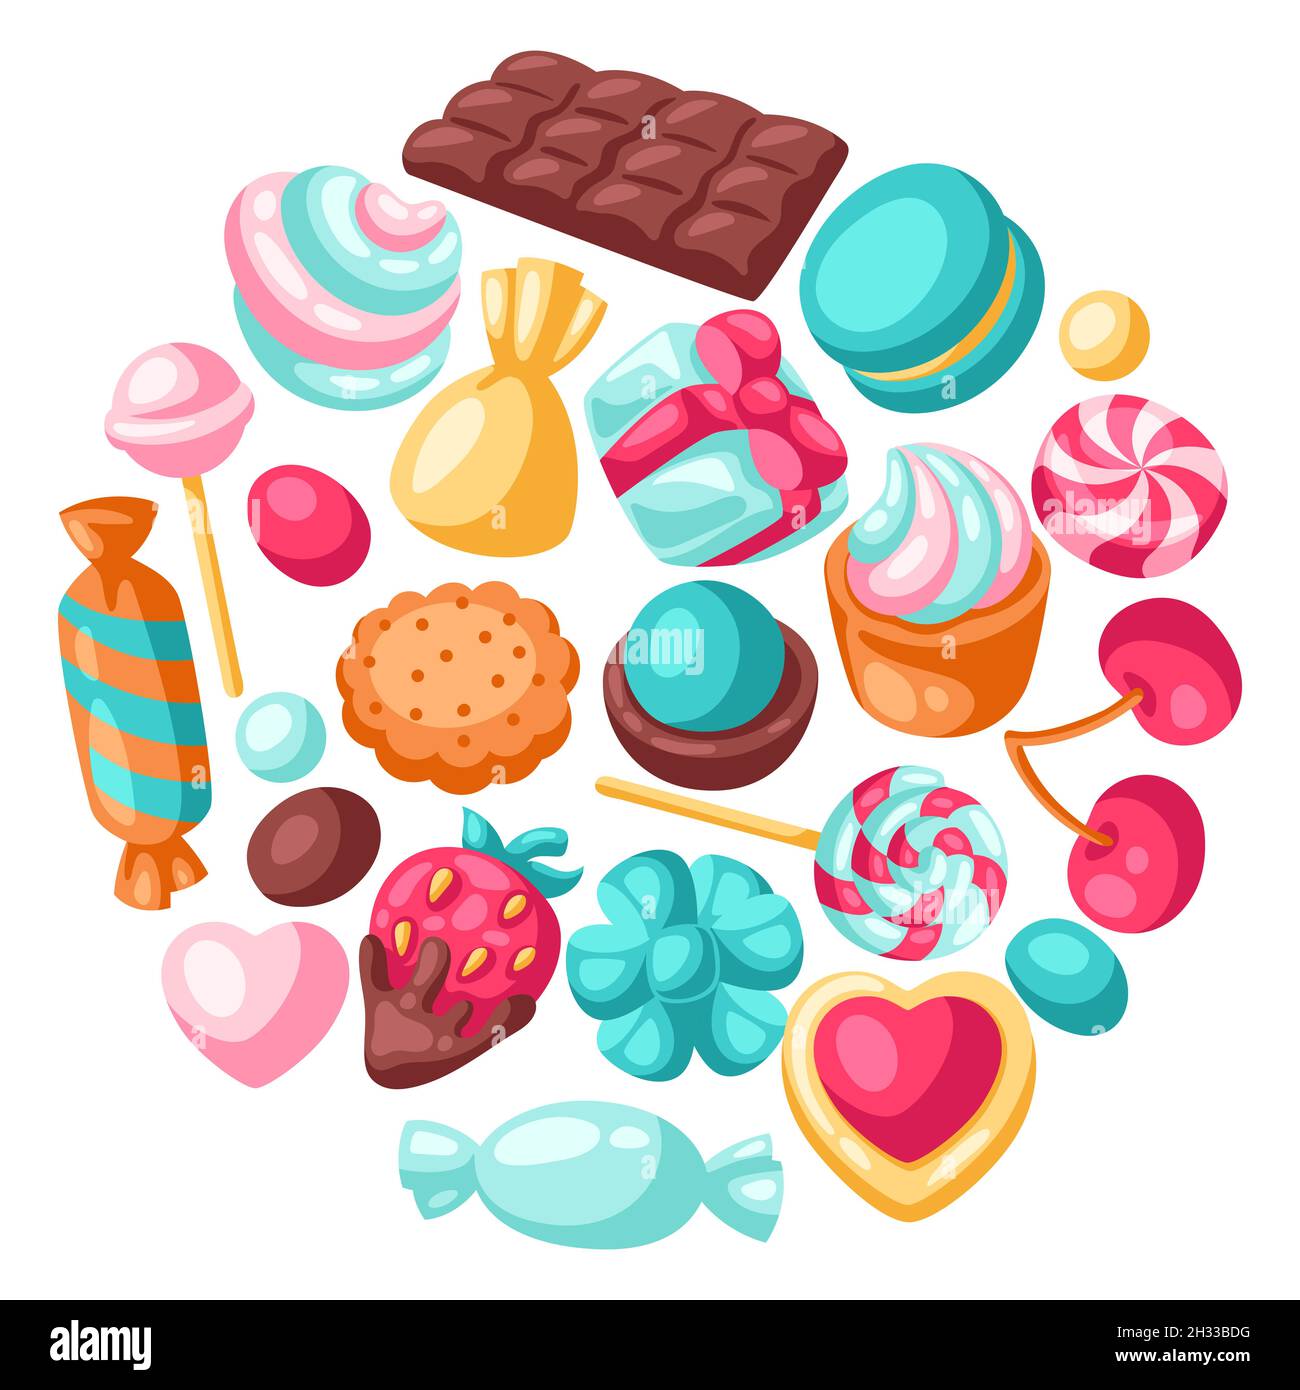 Hintergrund mit verschiedenen Süßigkeiten und Süßigkeiten. Stilisierte Illustration für Süßwaren oder Backwaren. Stock Vektor